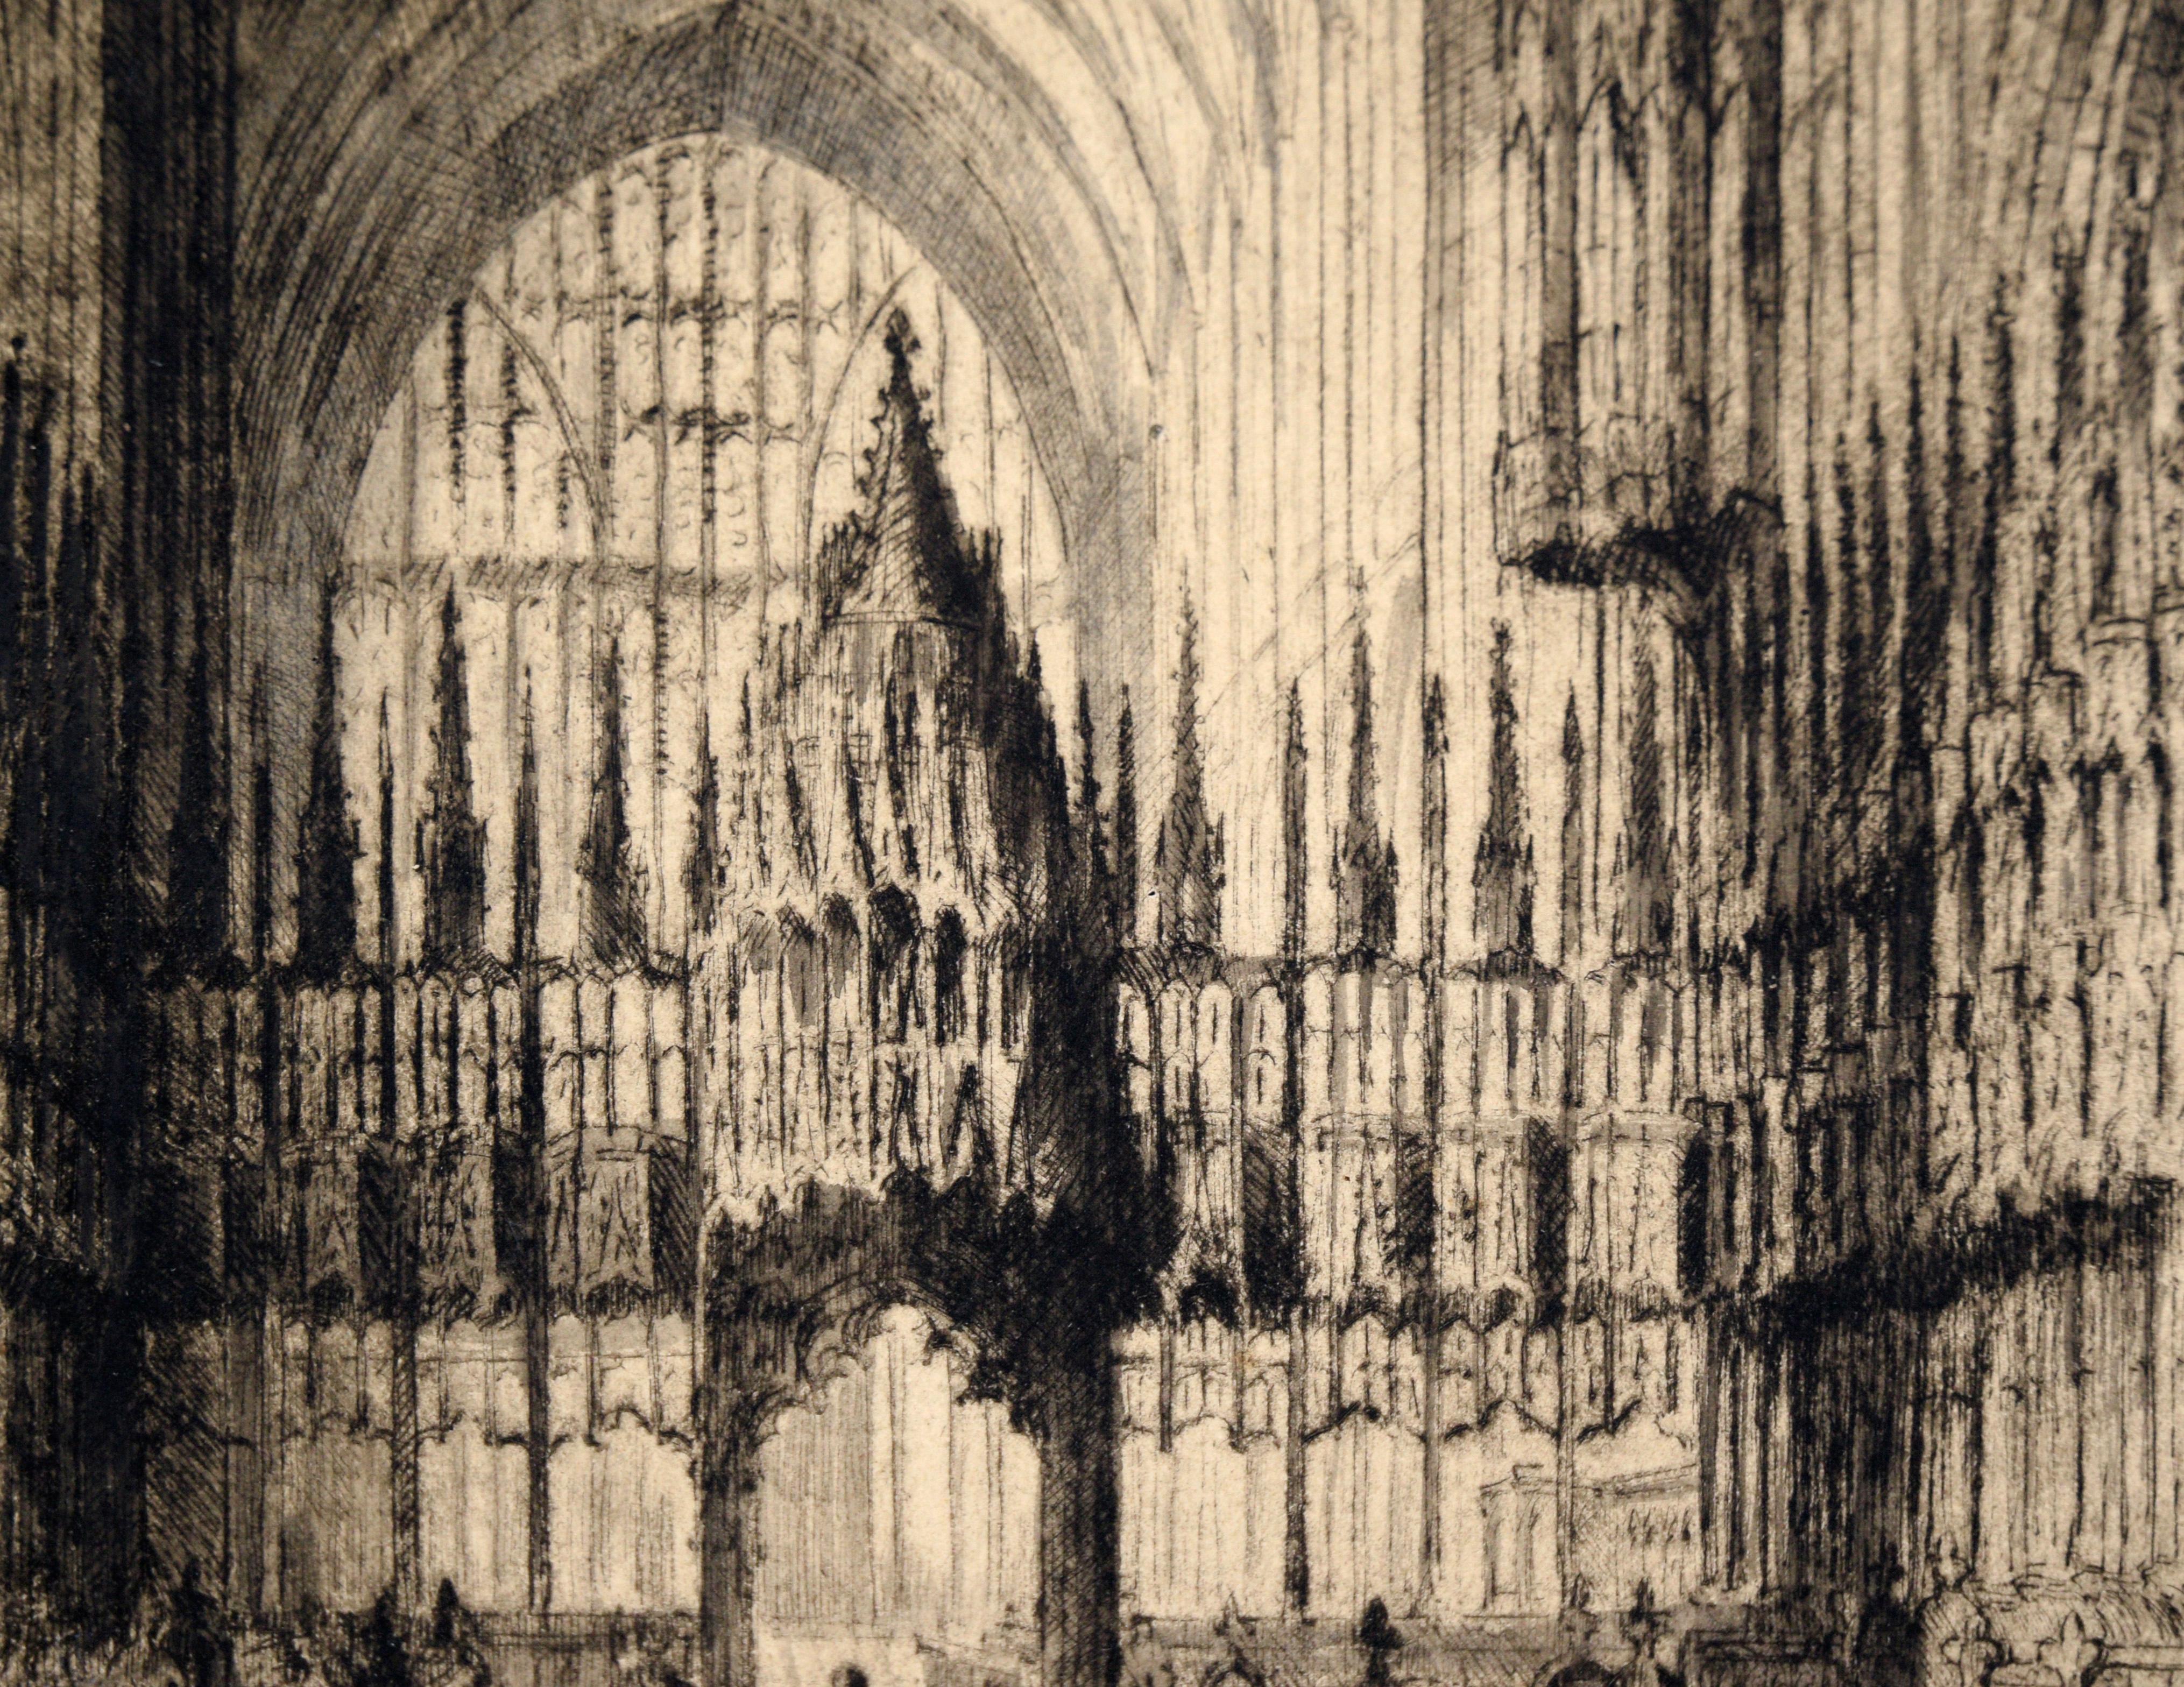 Kathedrale von Chester - Kaltnadelradierung mit Tinte auf Papier

Dramatische Kaltnadelradierung von J. Alphege Brewer (Brite, 1881-1946). Diese Komposition zeigt das Innere der Kathedrale von Chester in Brewers charakteristischem Stil - sehr